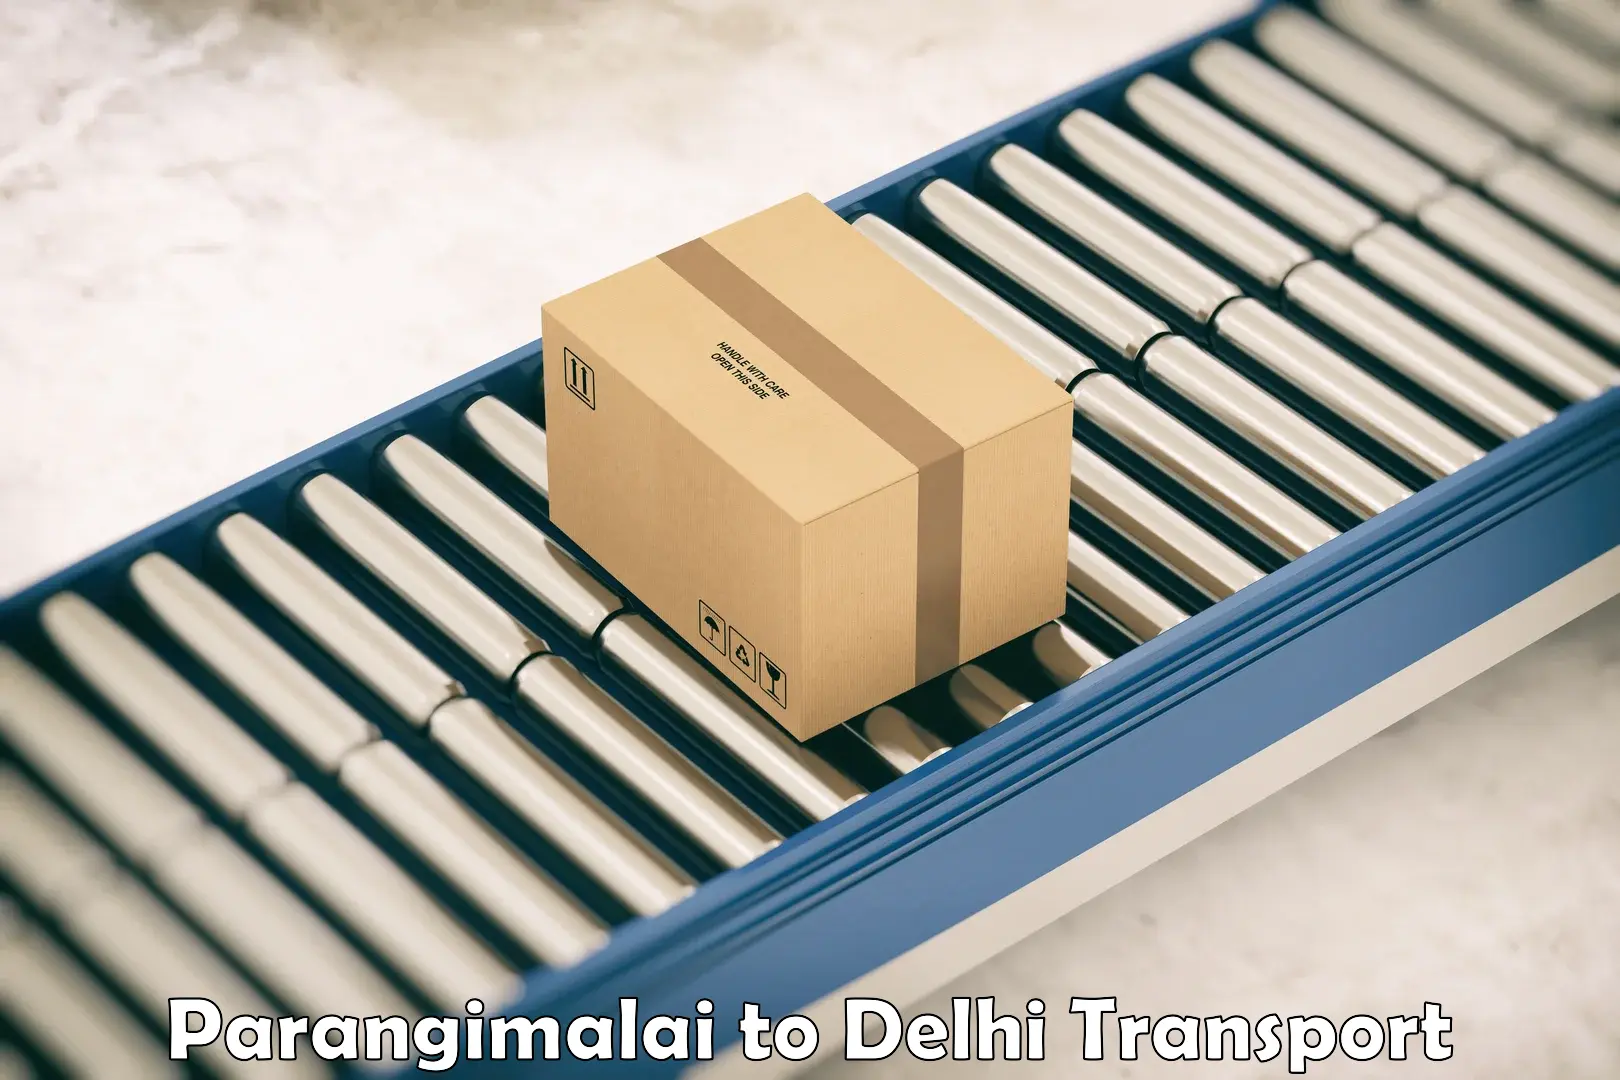 Lorry transport service Parangimalai to Jamia Millia Islamia New Delhi